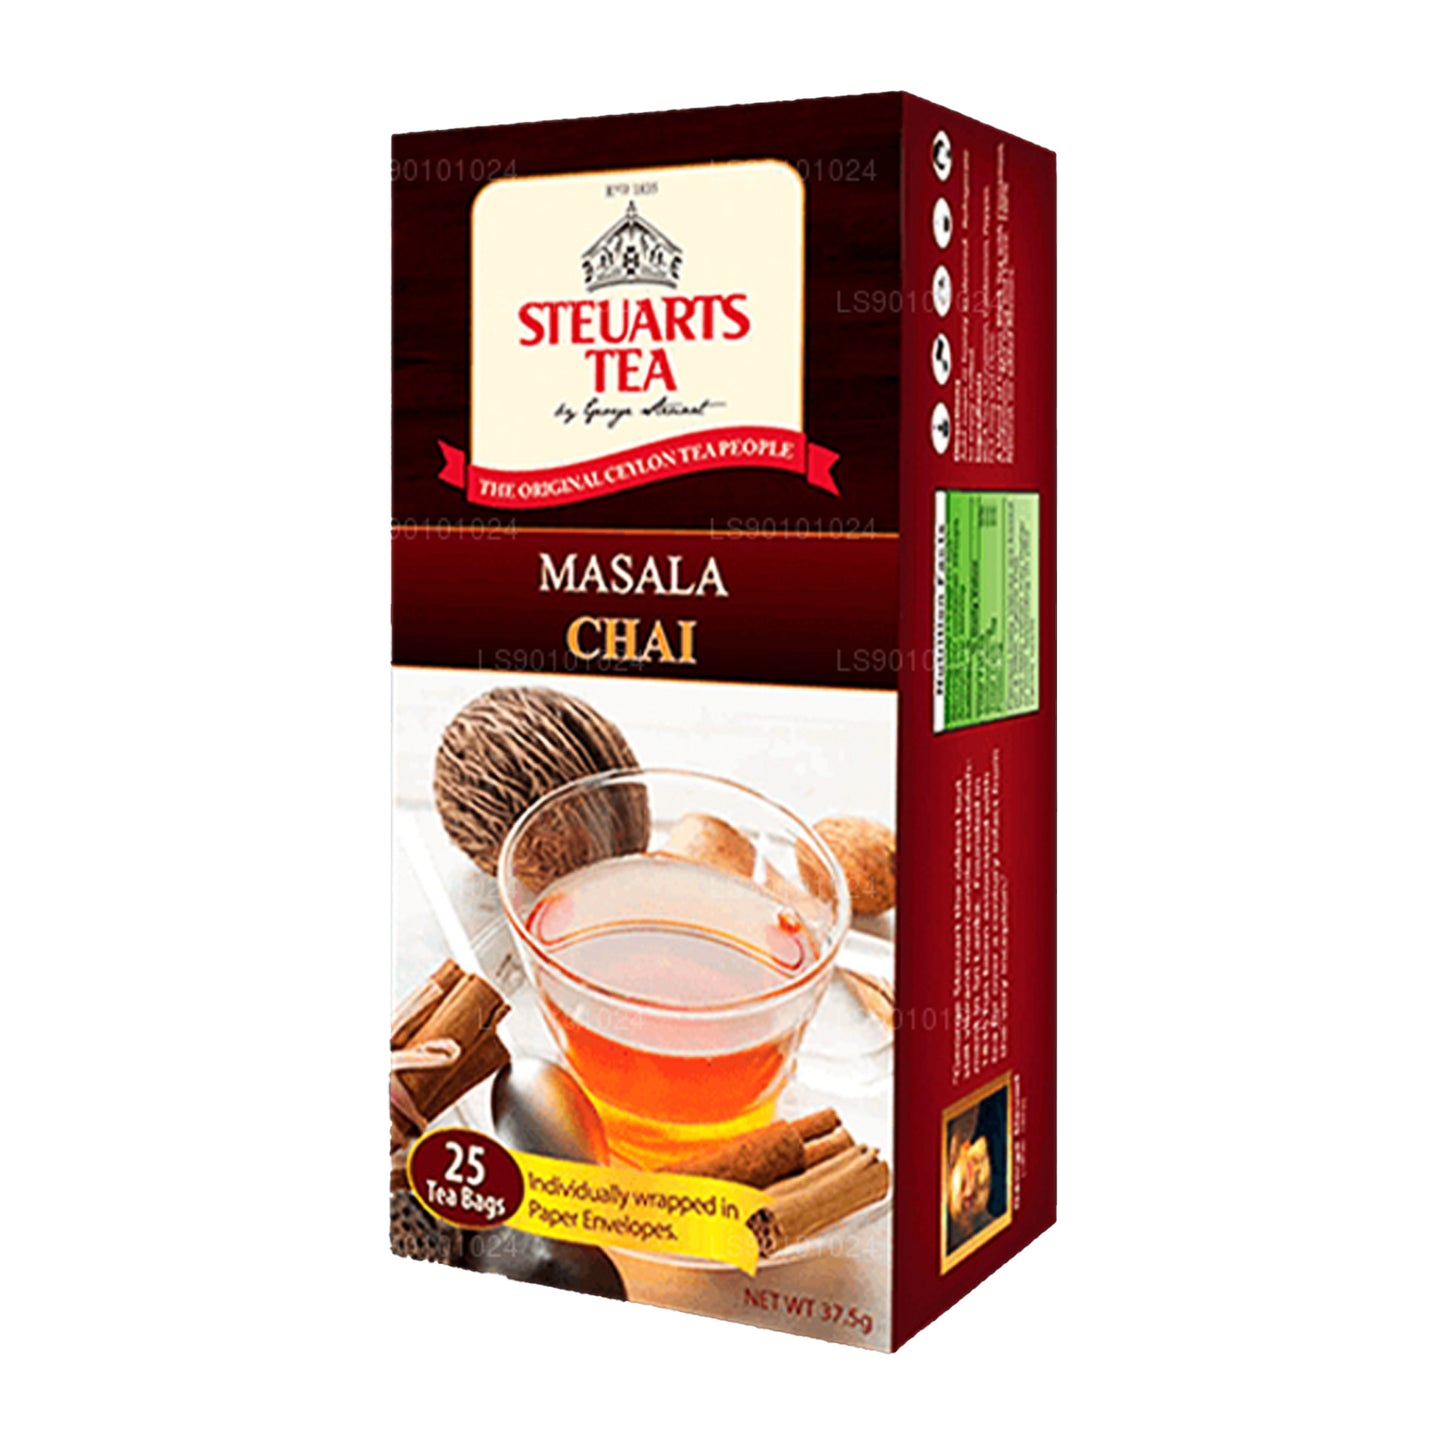 George Steuart Masala Chai čaj (50g) 25 čajových sáčků